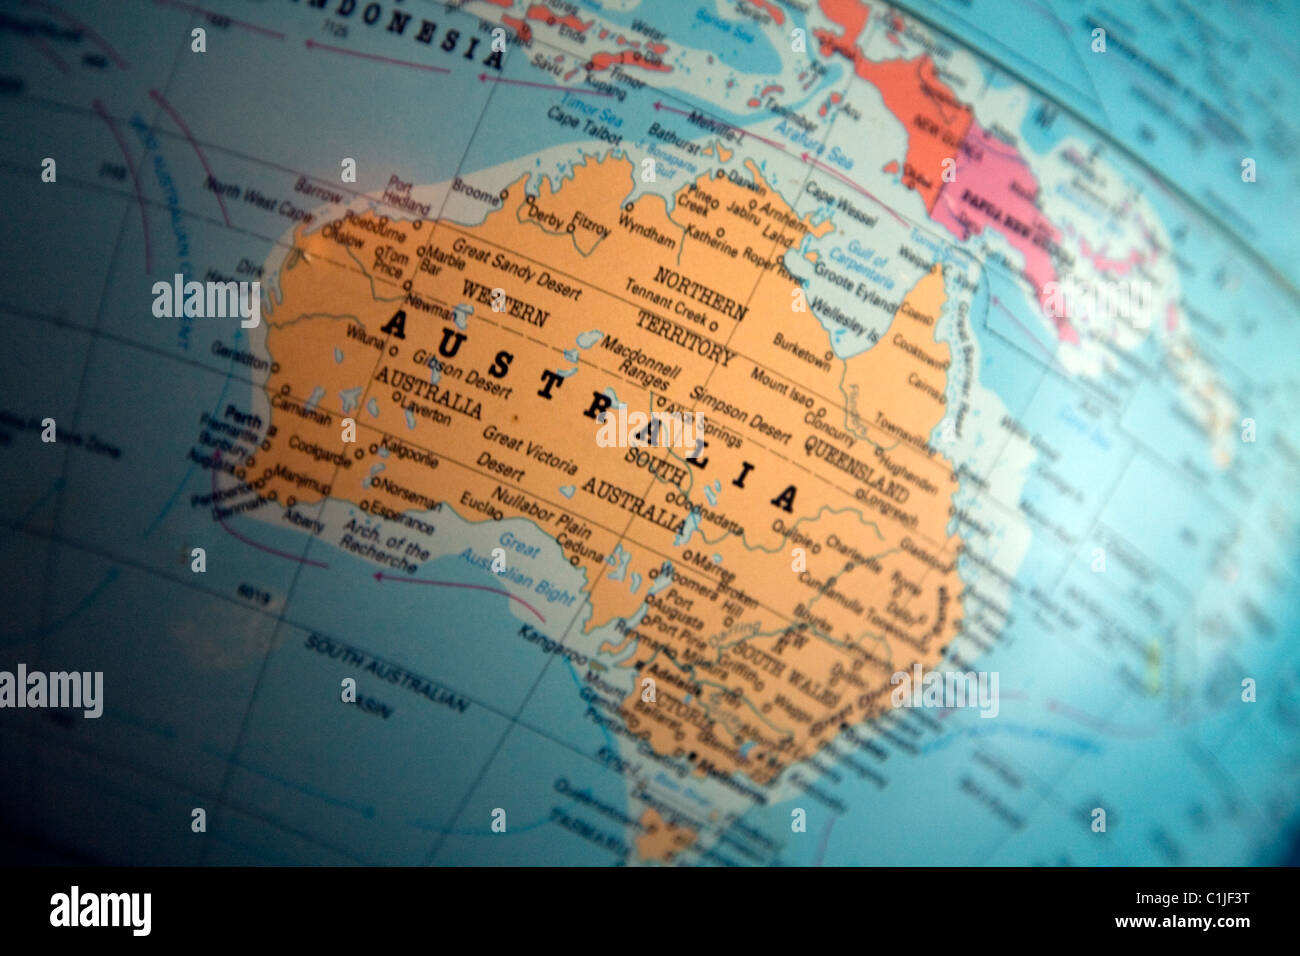 Australia Australasia globe map Stock Photo